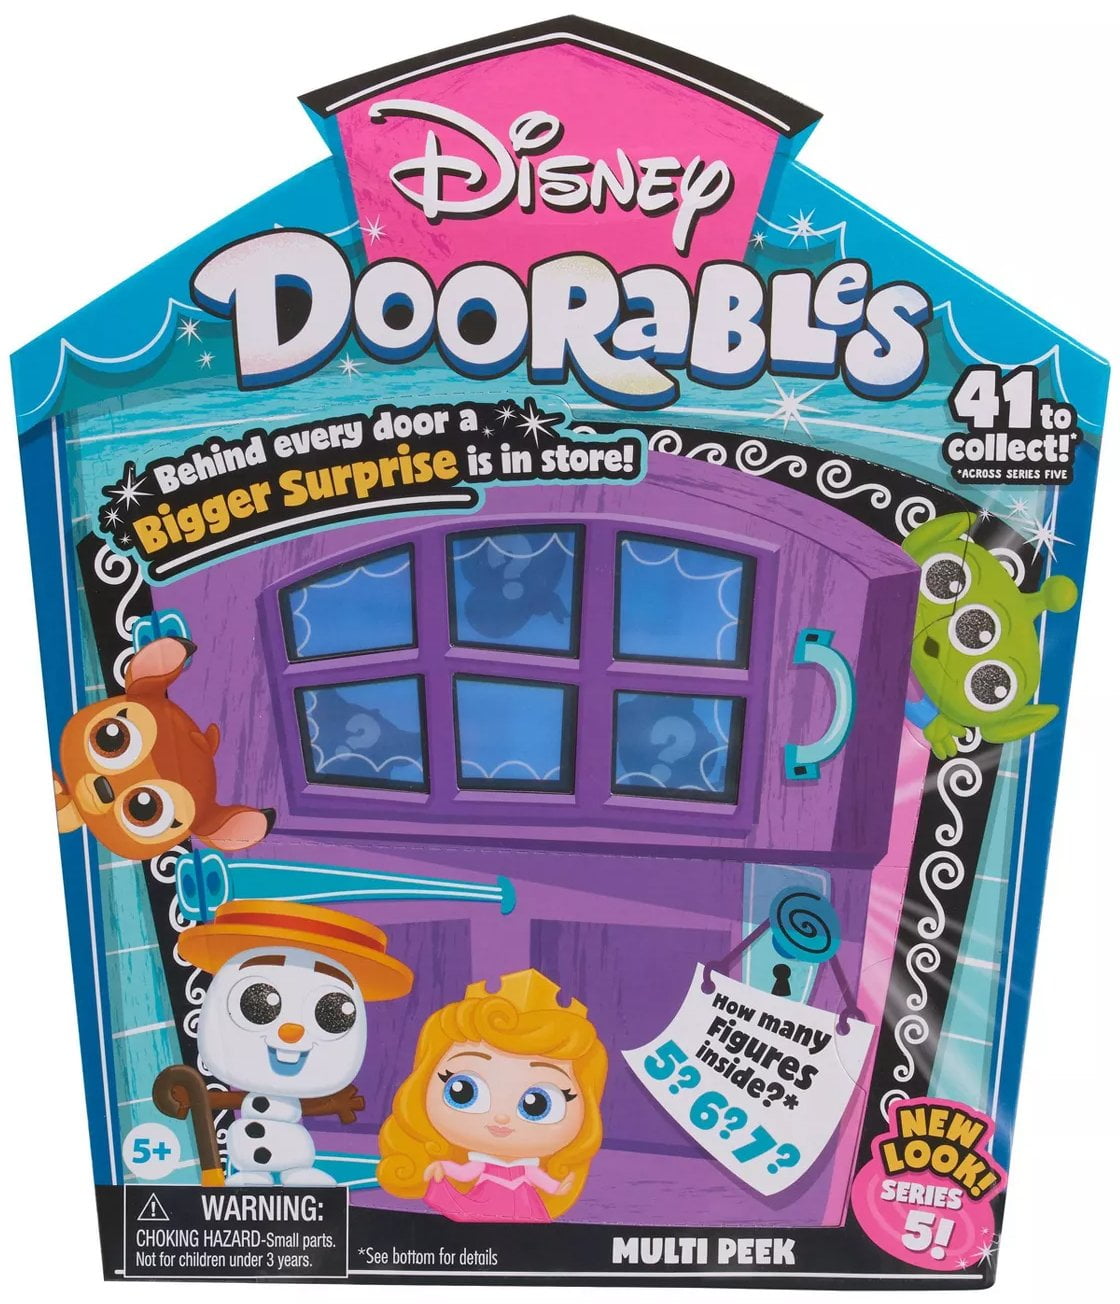 Disney Doorables Multi Peek Series 7 Collectible Figurines - Just Play